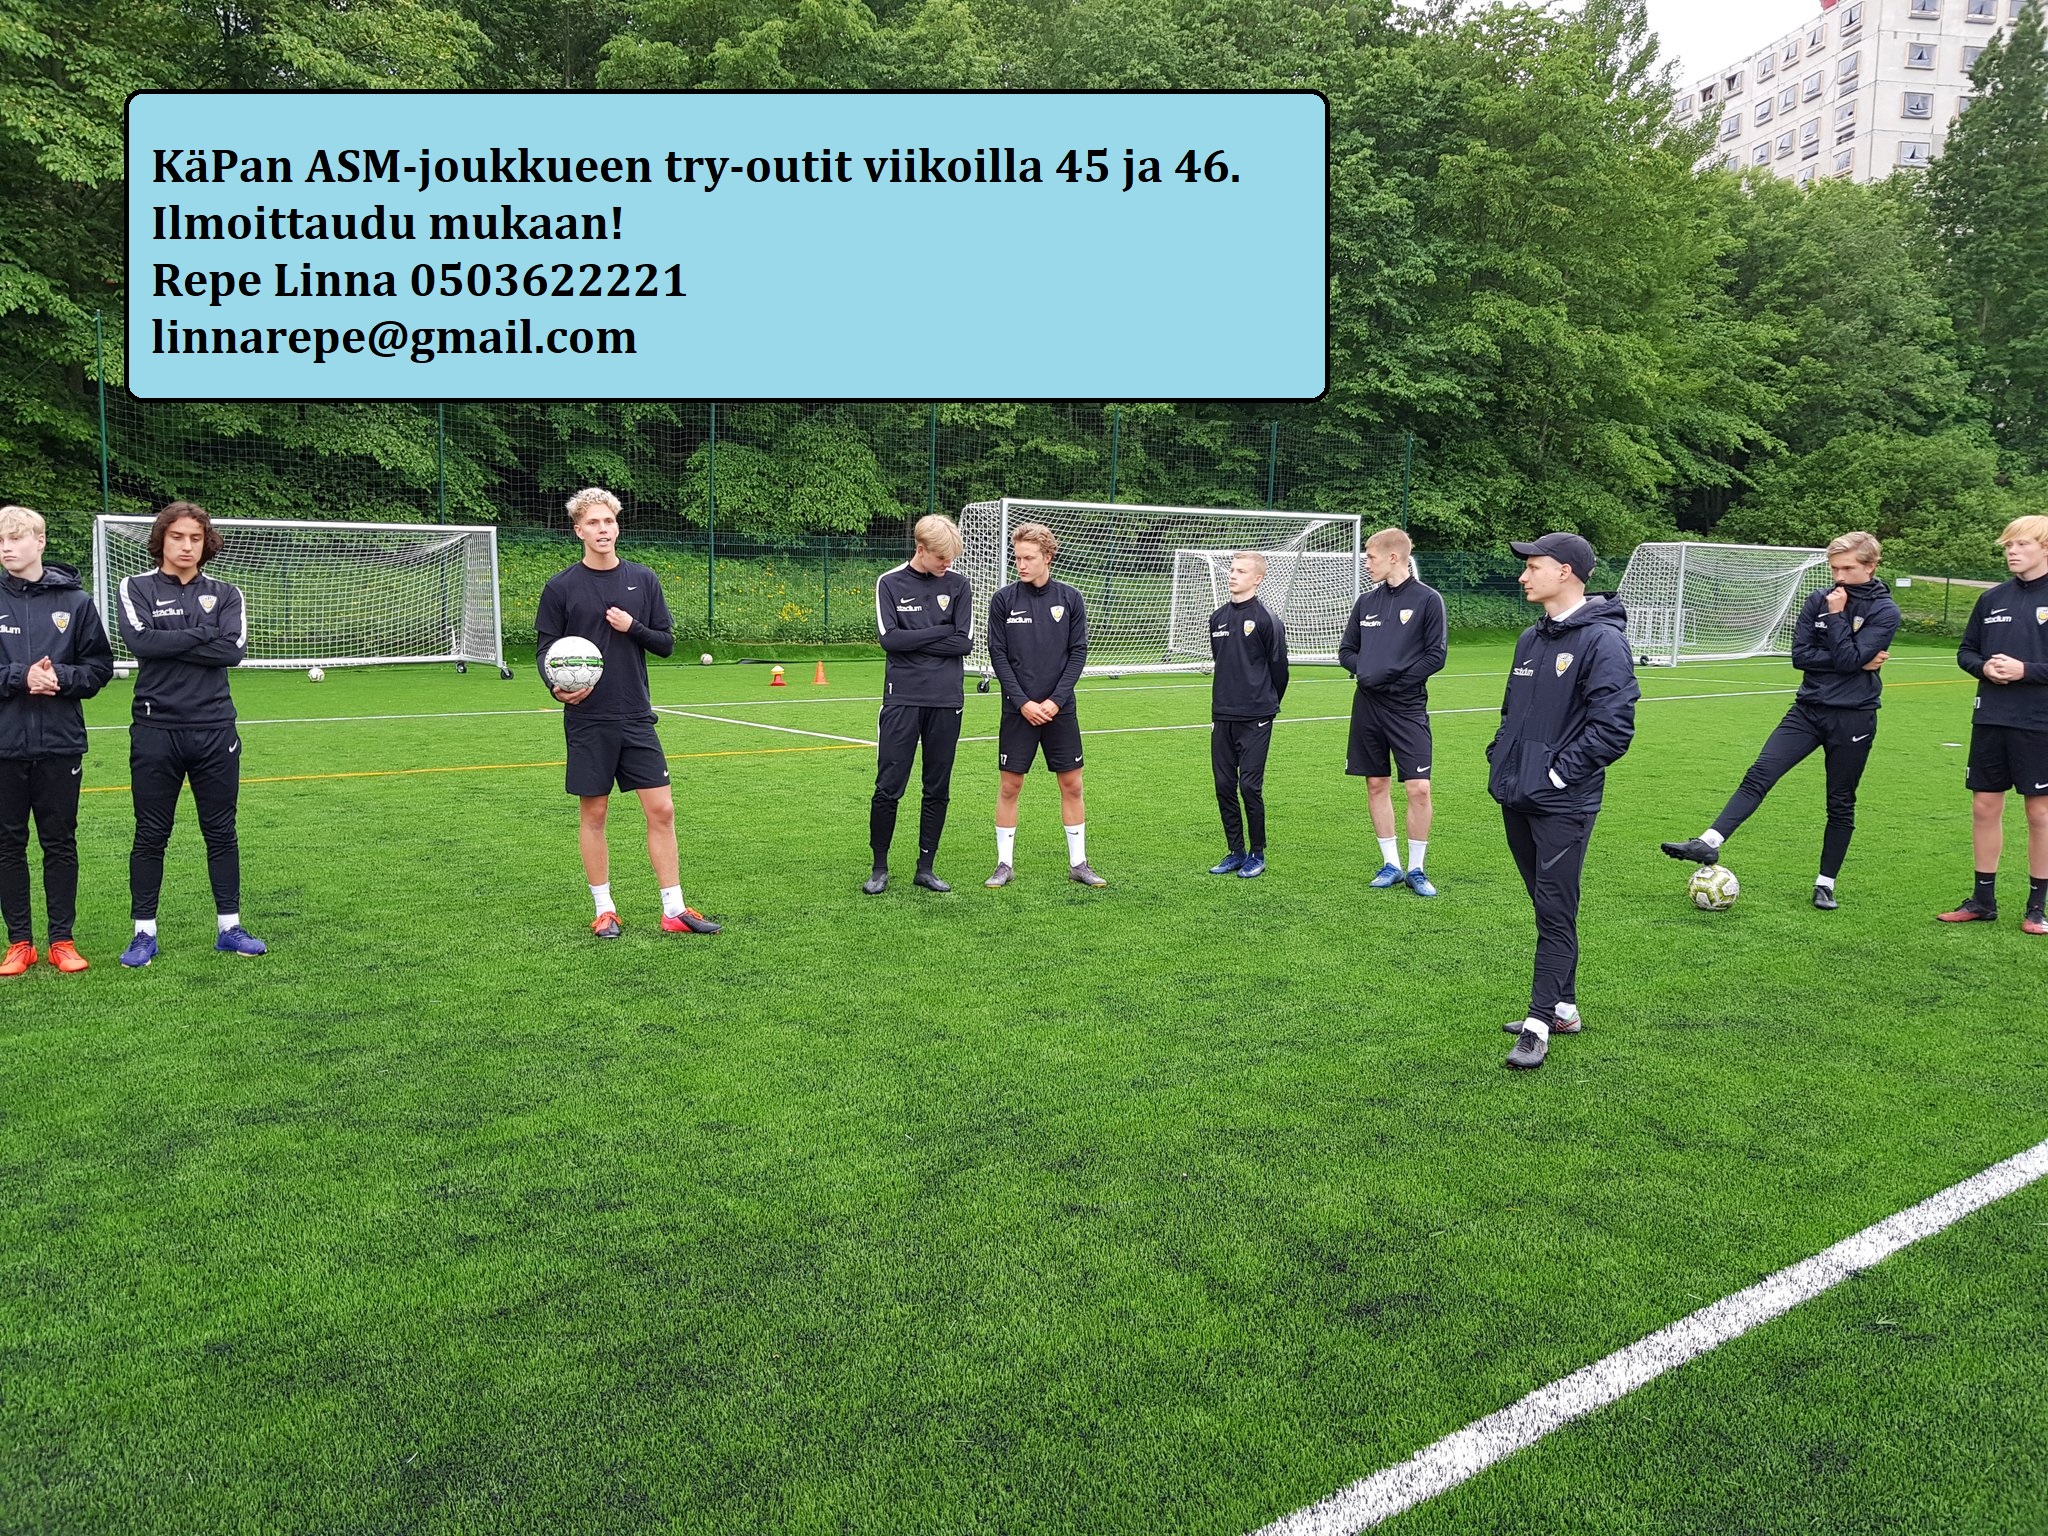 KäPan ASM-joukkueen try-outit viikoilla 45 ja 46